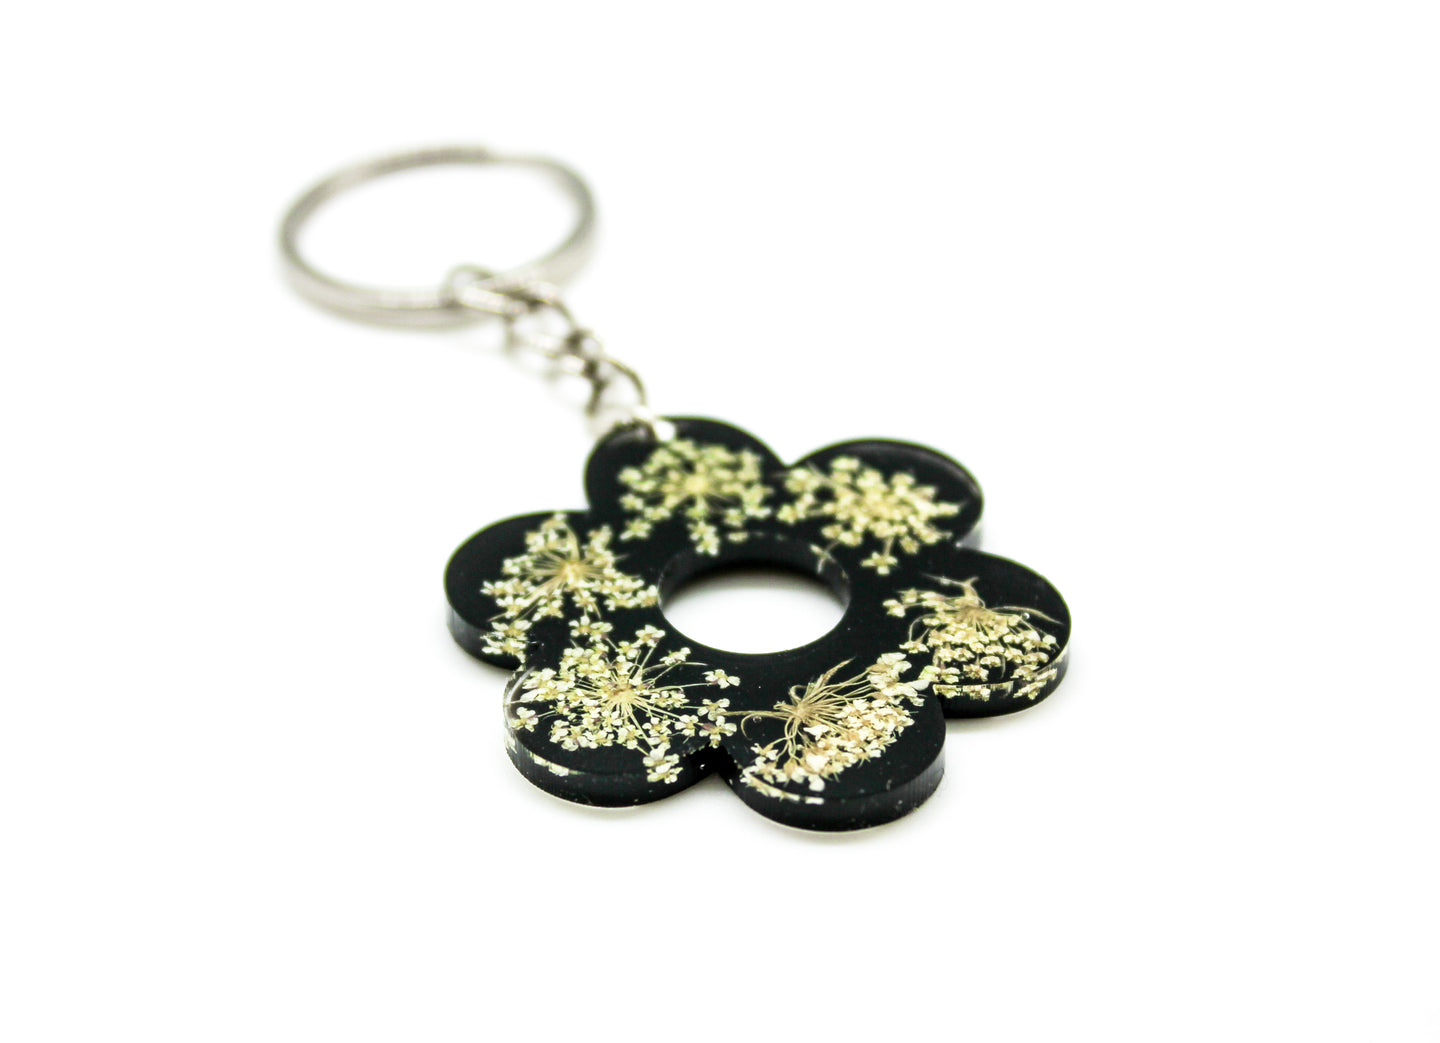 Black Queen Anne’s flower keychain